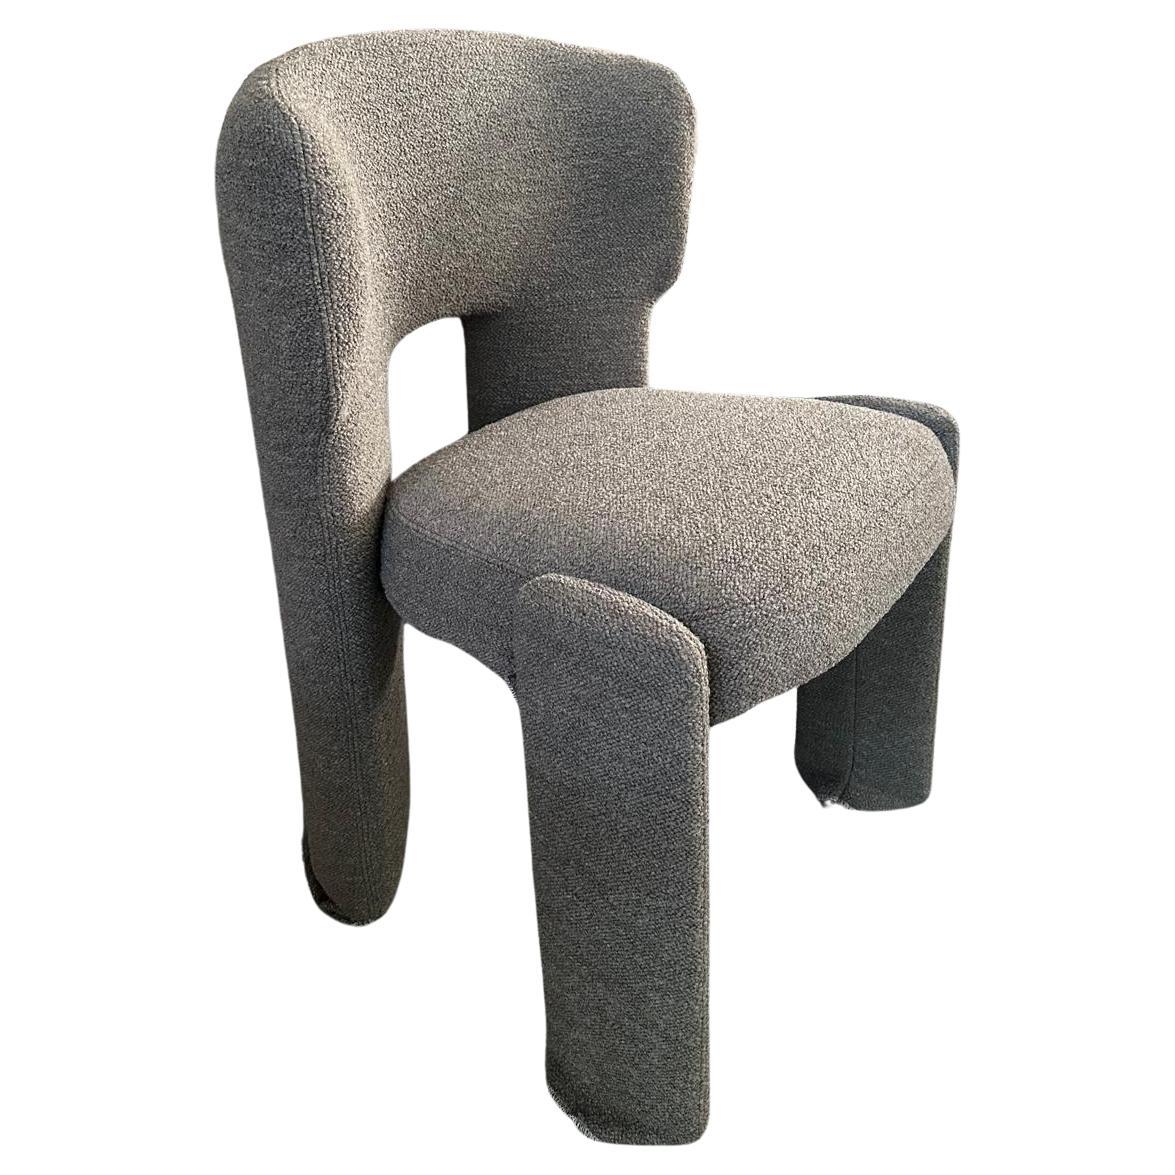 Mohdern Chairs